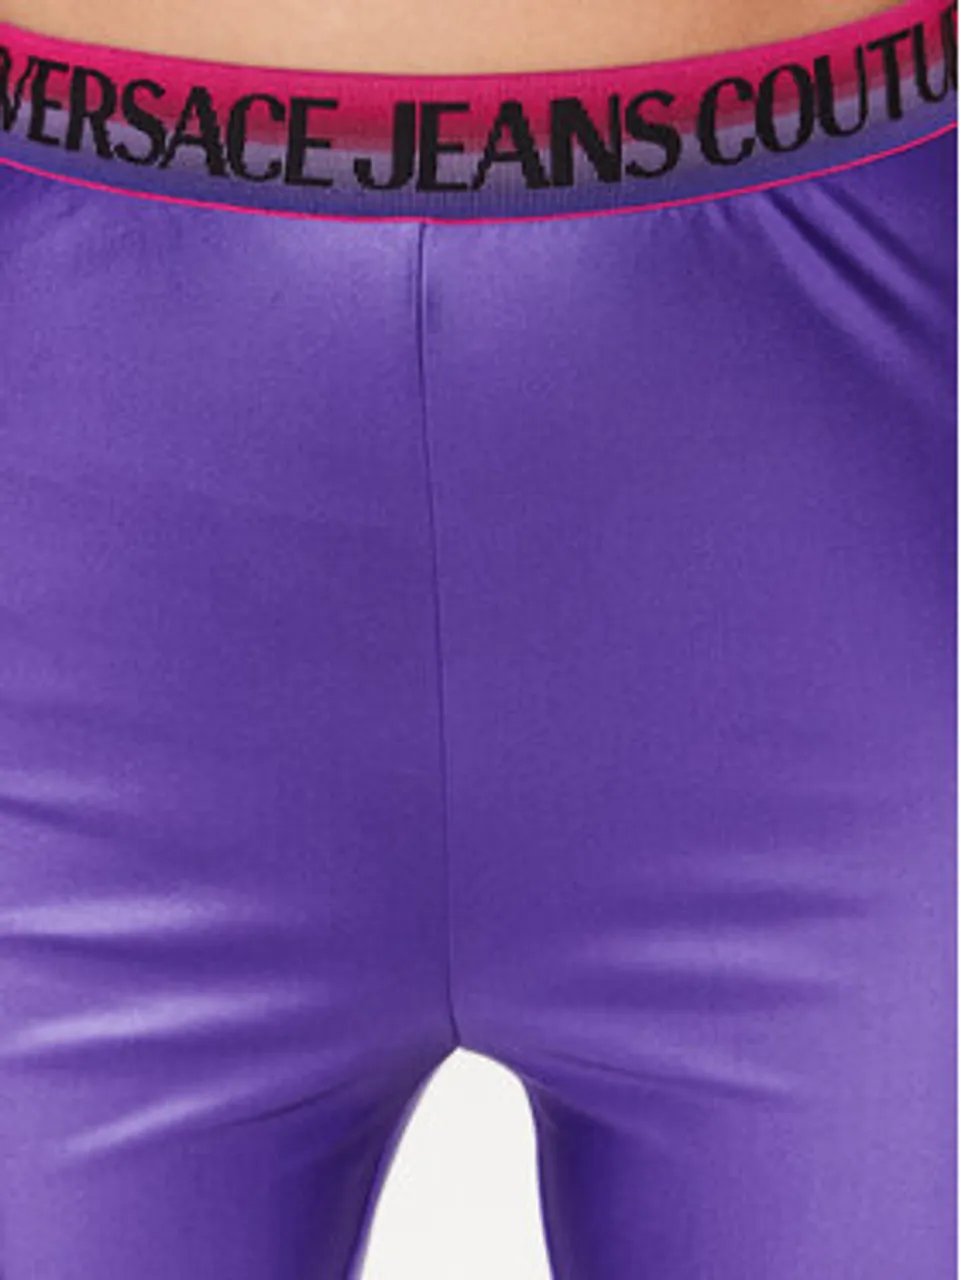 Versace Jeans Couture Leggings 74HAC101 Violett Slim Fit